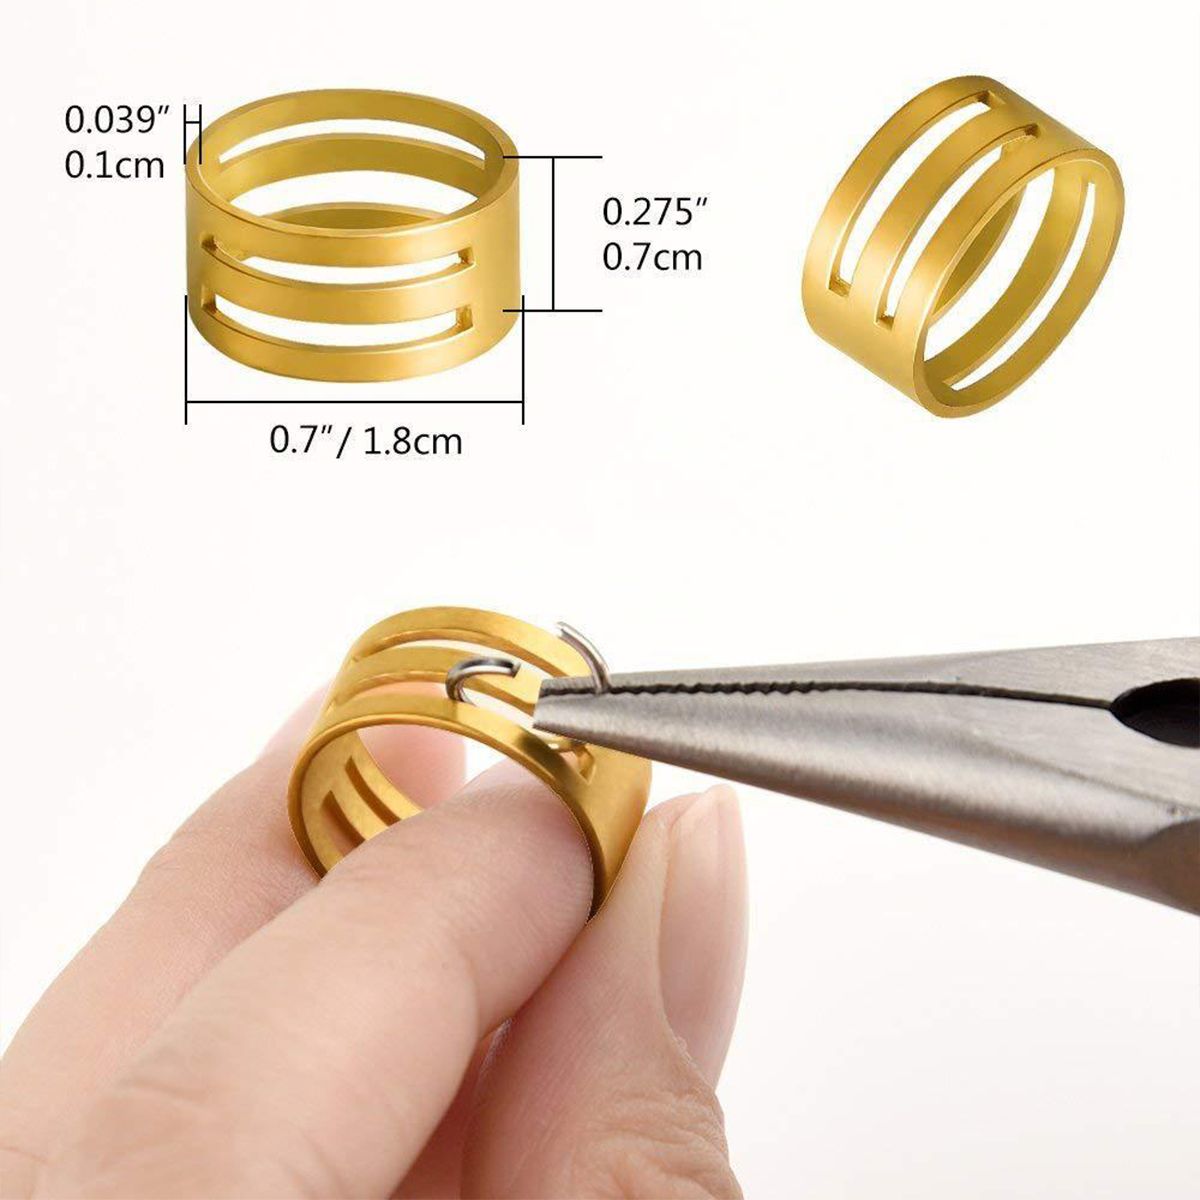 Necklace-Bracelet-Earrings-Set-Jewelry-DIY-Making-Kit-Handmade-Jewelry-Making-1735464